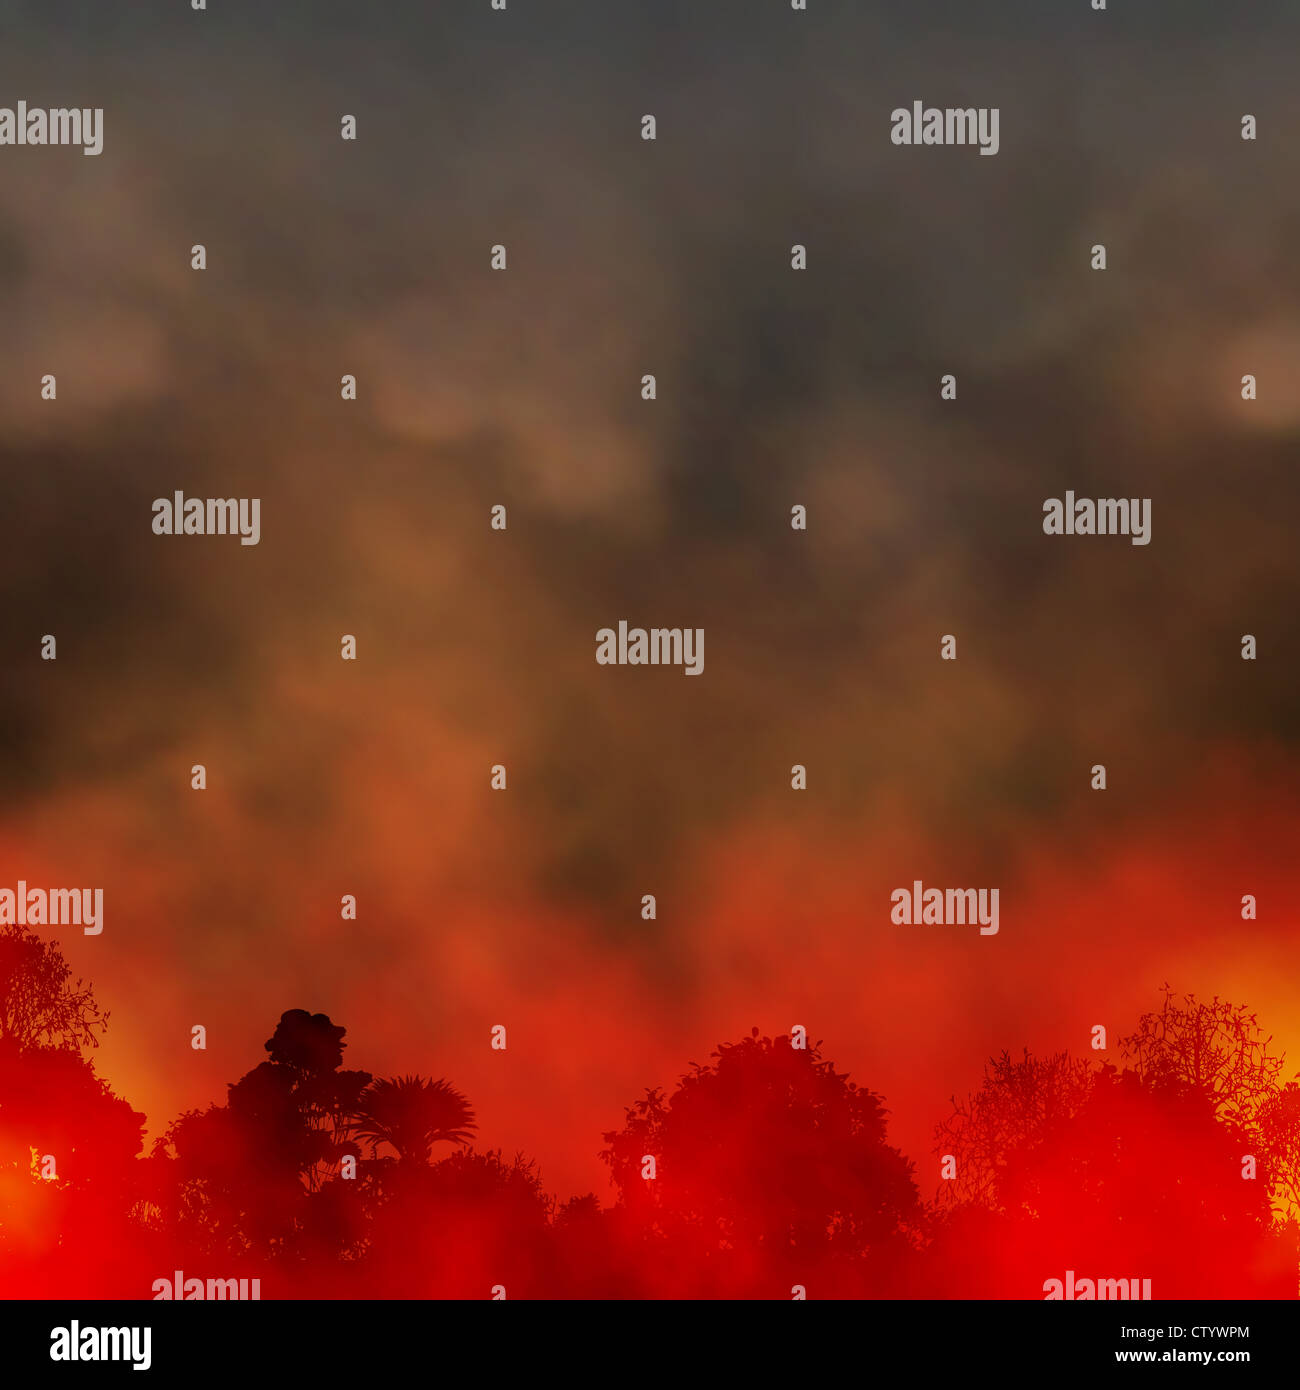 Illustrazione di un fumoso incendio di boschi Foto Stock